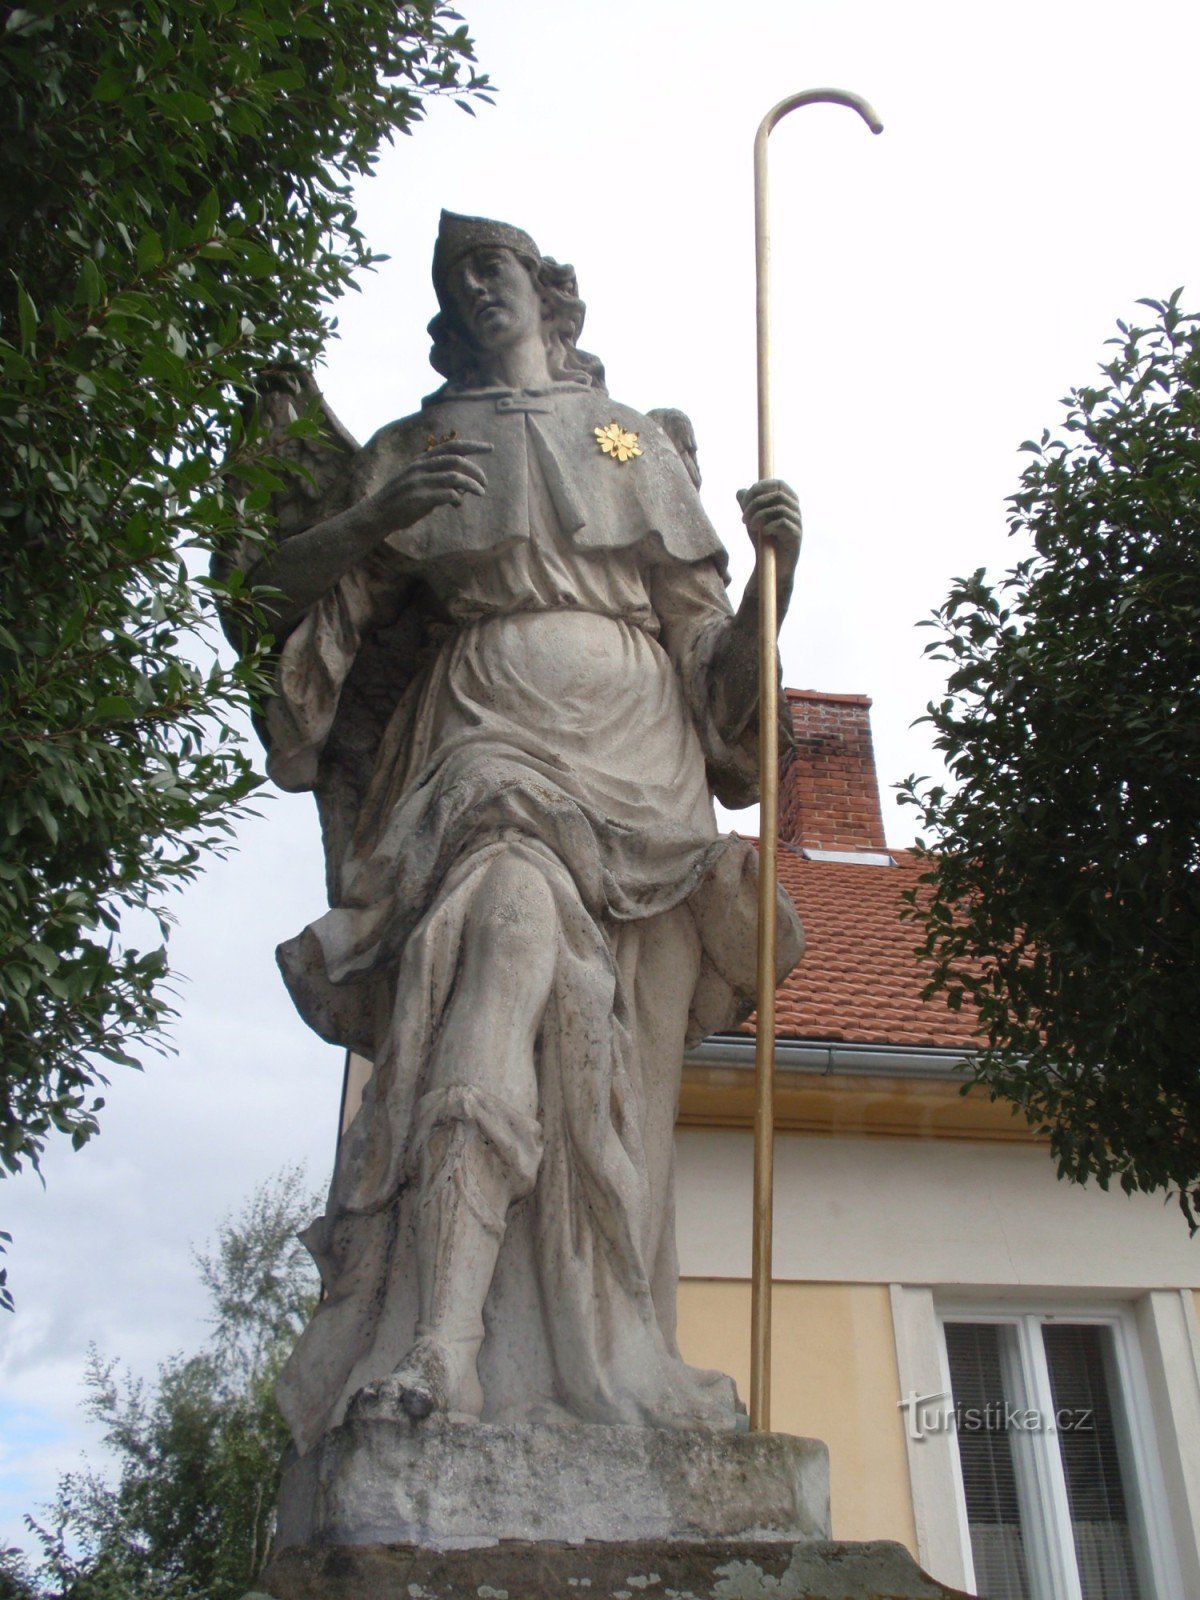 Kip arkanđela Rafaela u Rájc-Jestřebí